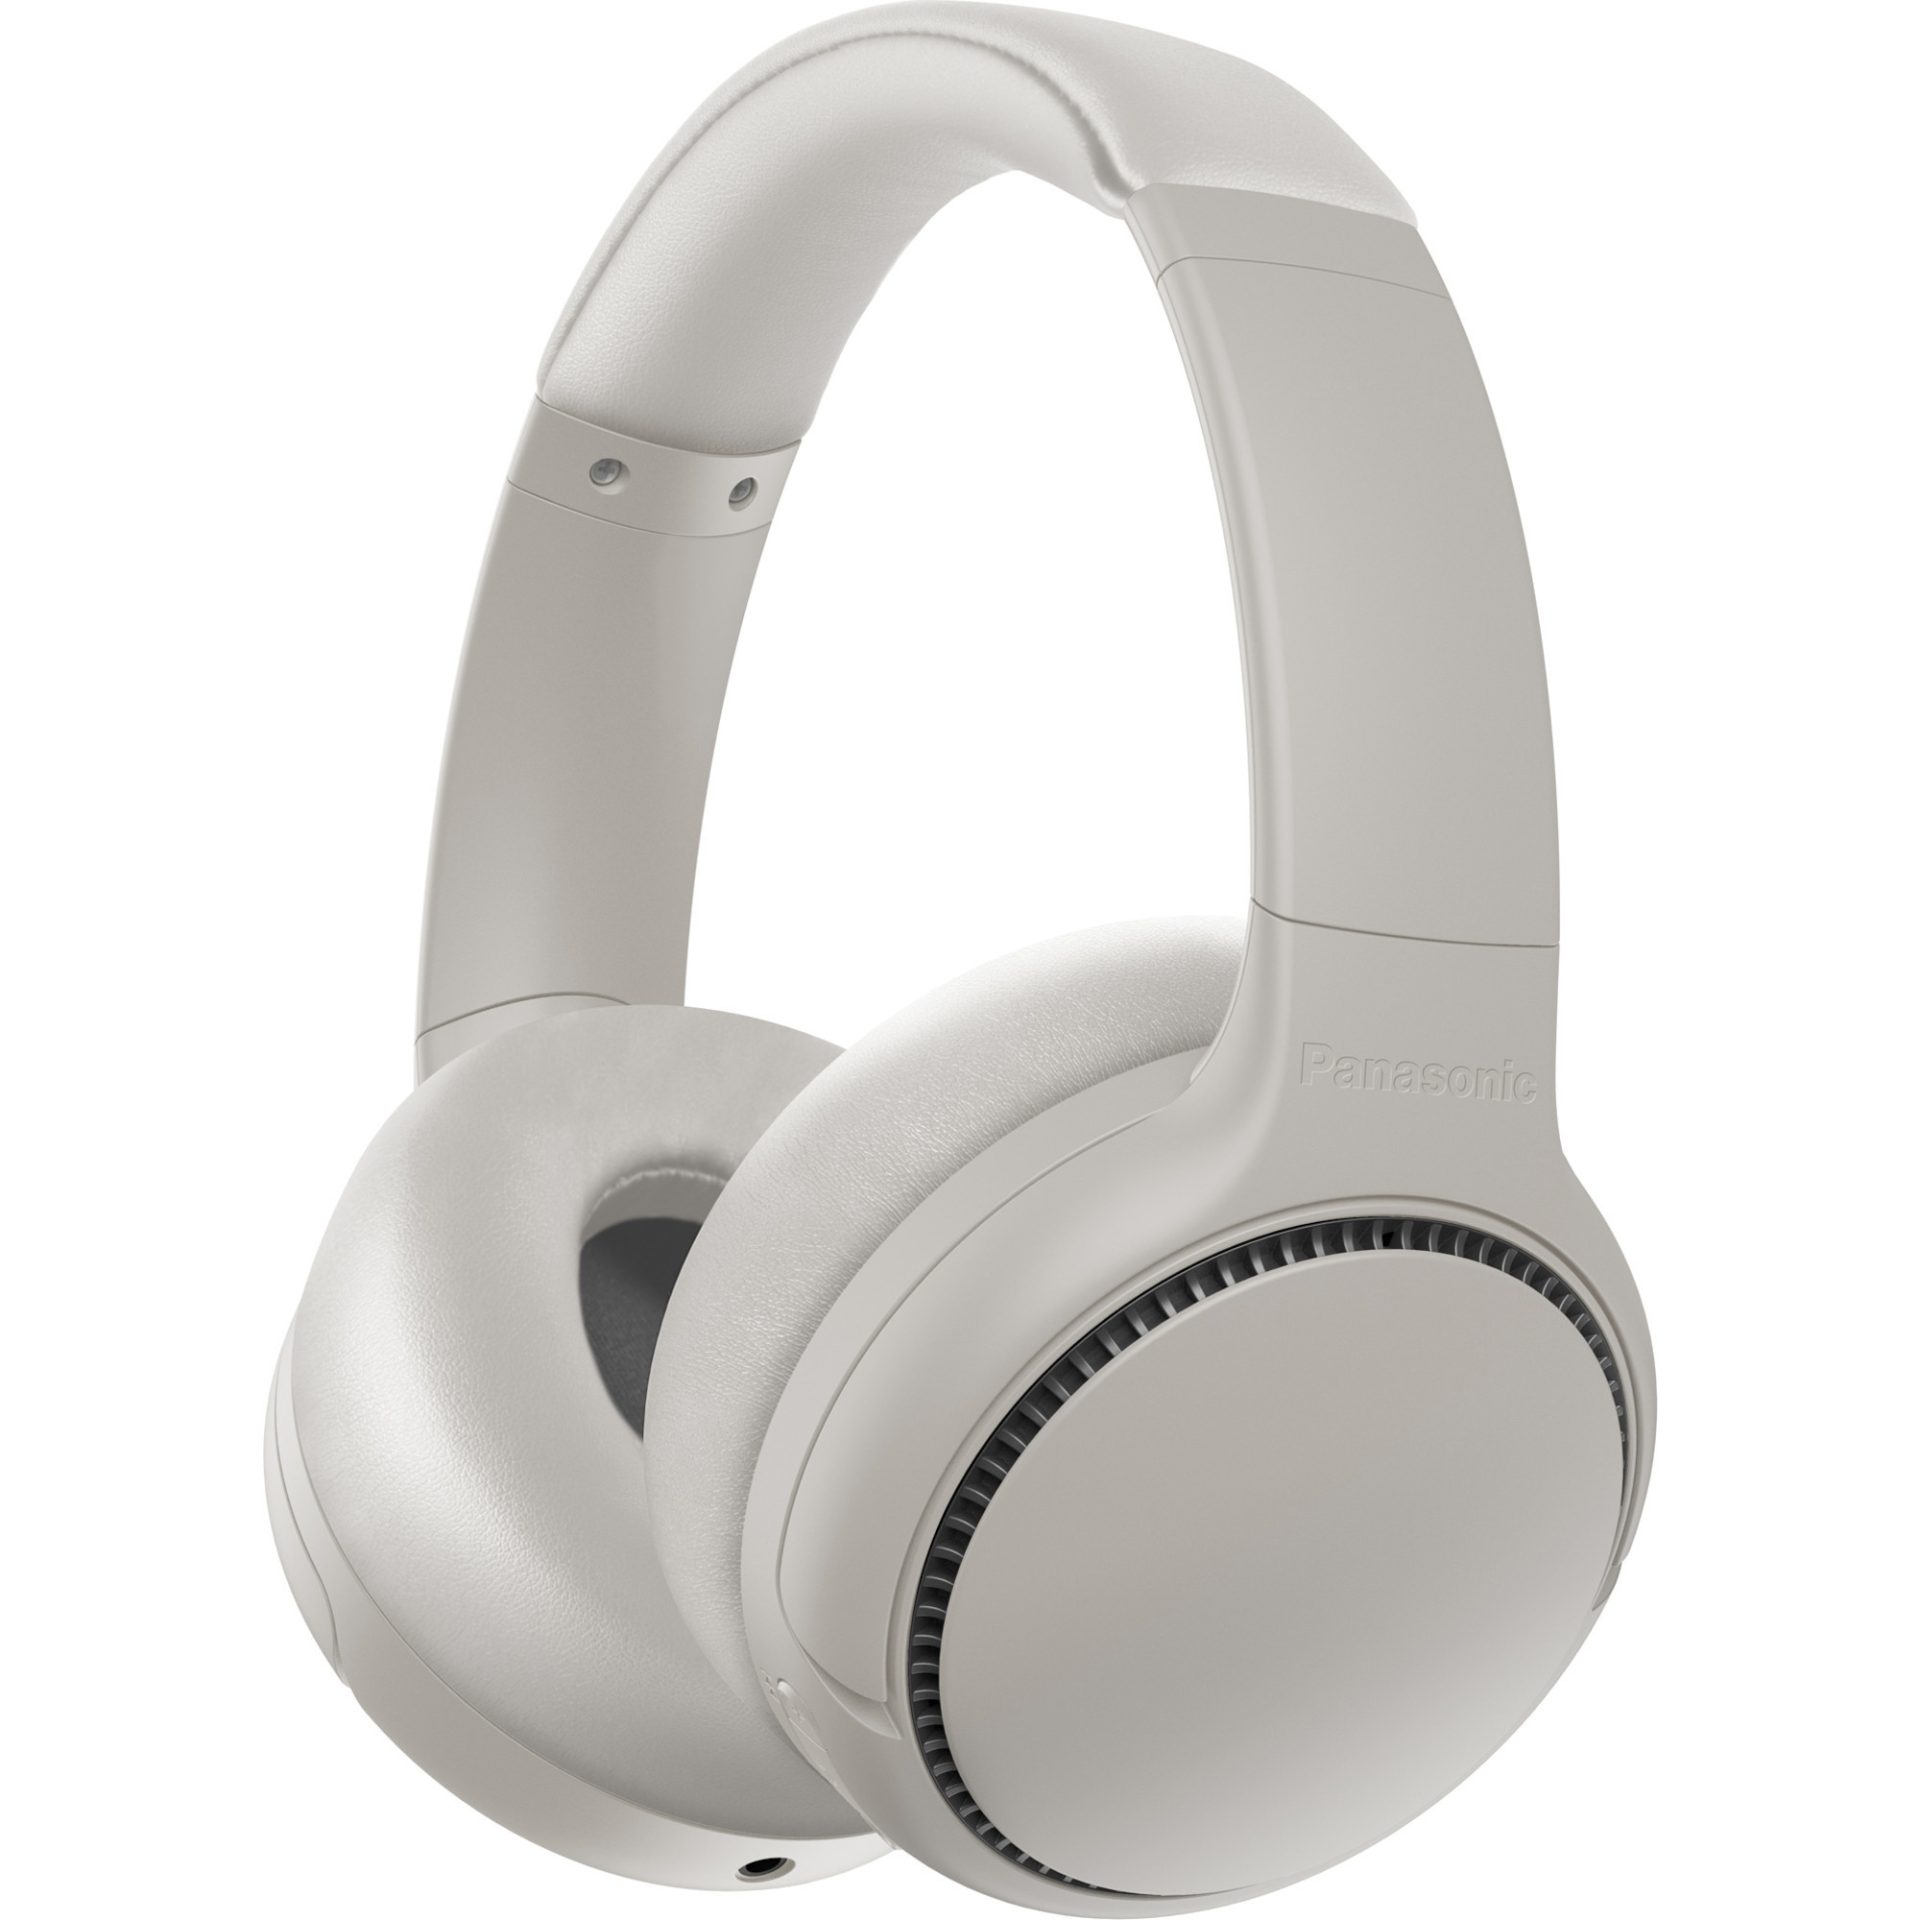 Panasonic RB-M500 bezdrátová sluchátka na uši generující hluboké basy (Bluetooth, funkce XBS DEEP, 30h přehrávání, rychlé nabíjení), béžová